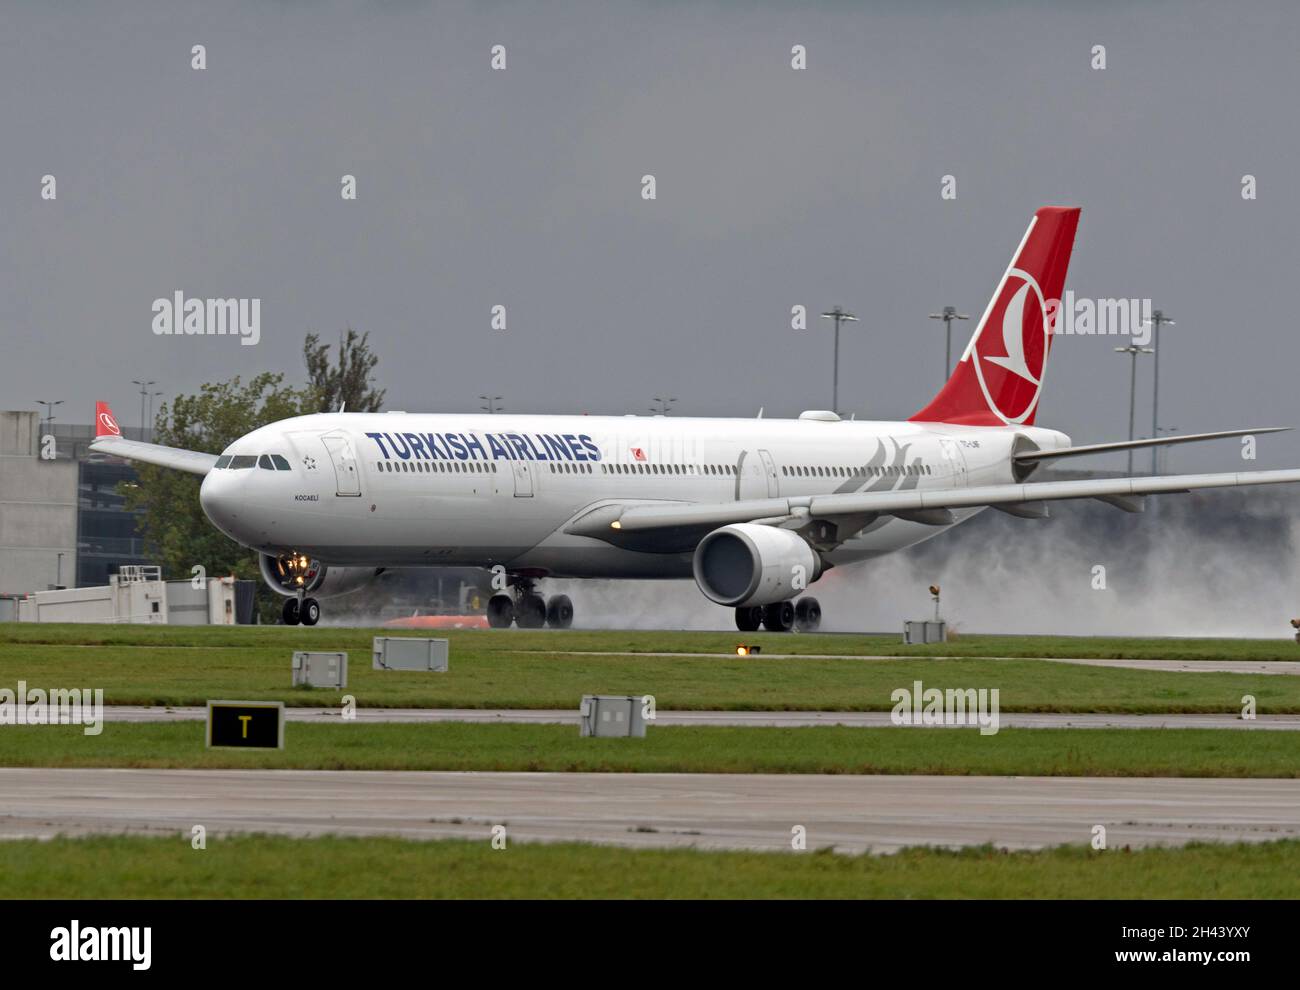 Turkish Airlines Airbus A330-303, TC-LNF, in direzione del decollo all'aeroporto di Manchester Foto Stock